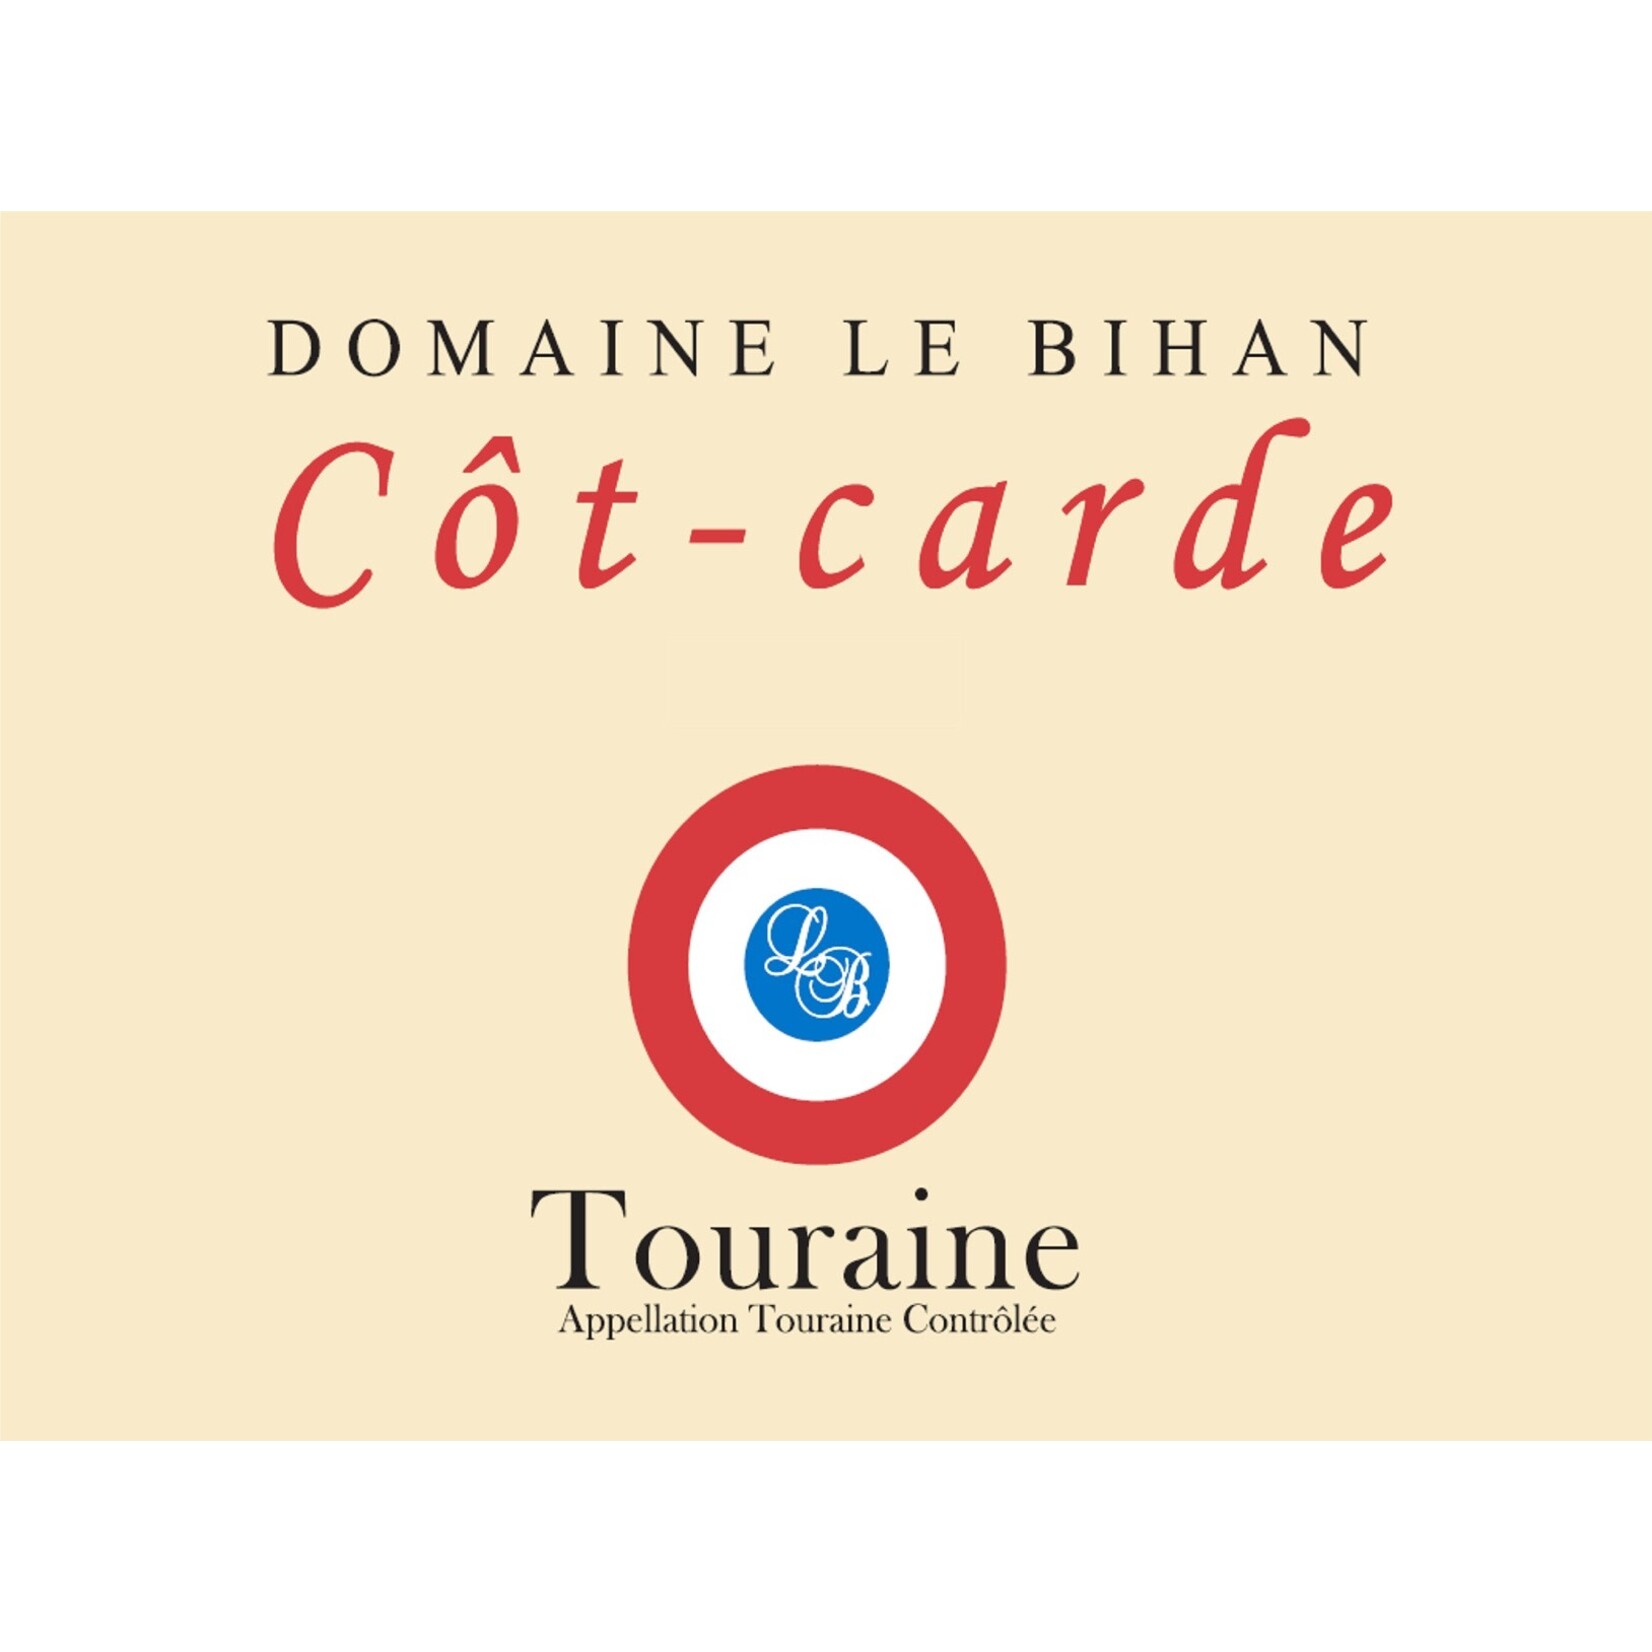 Domaine Le Bihan Cot-Carde 2021 Touraine Loire France